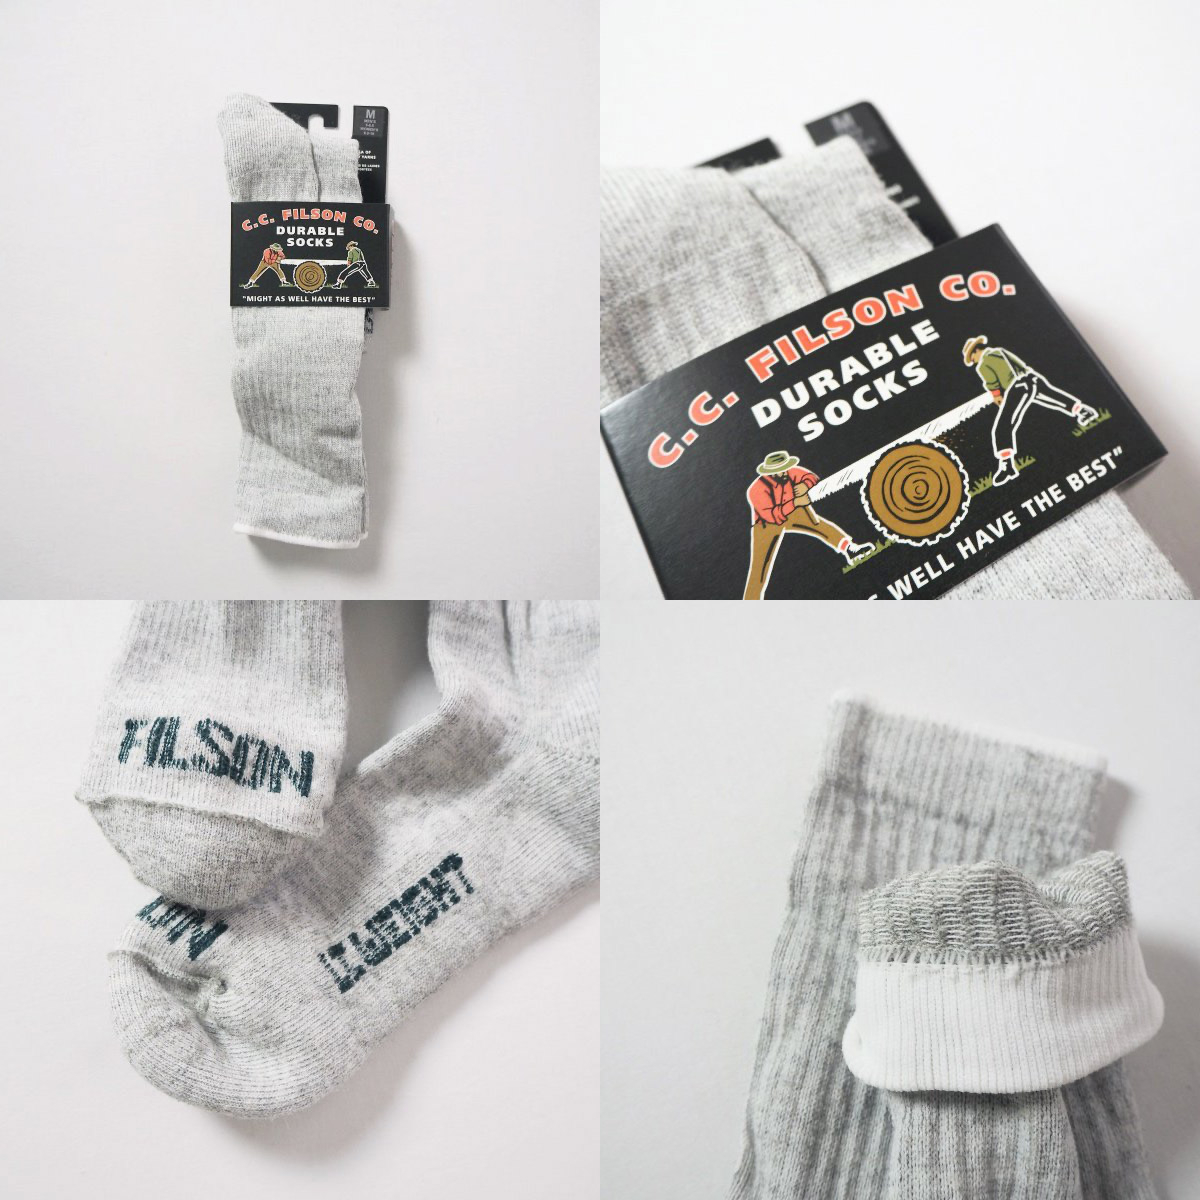 Filson Midweight Traditional Crew Socks gemaakt van merino wol met een vleugje nylon en spandex